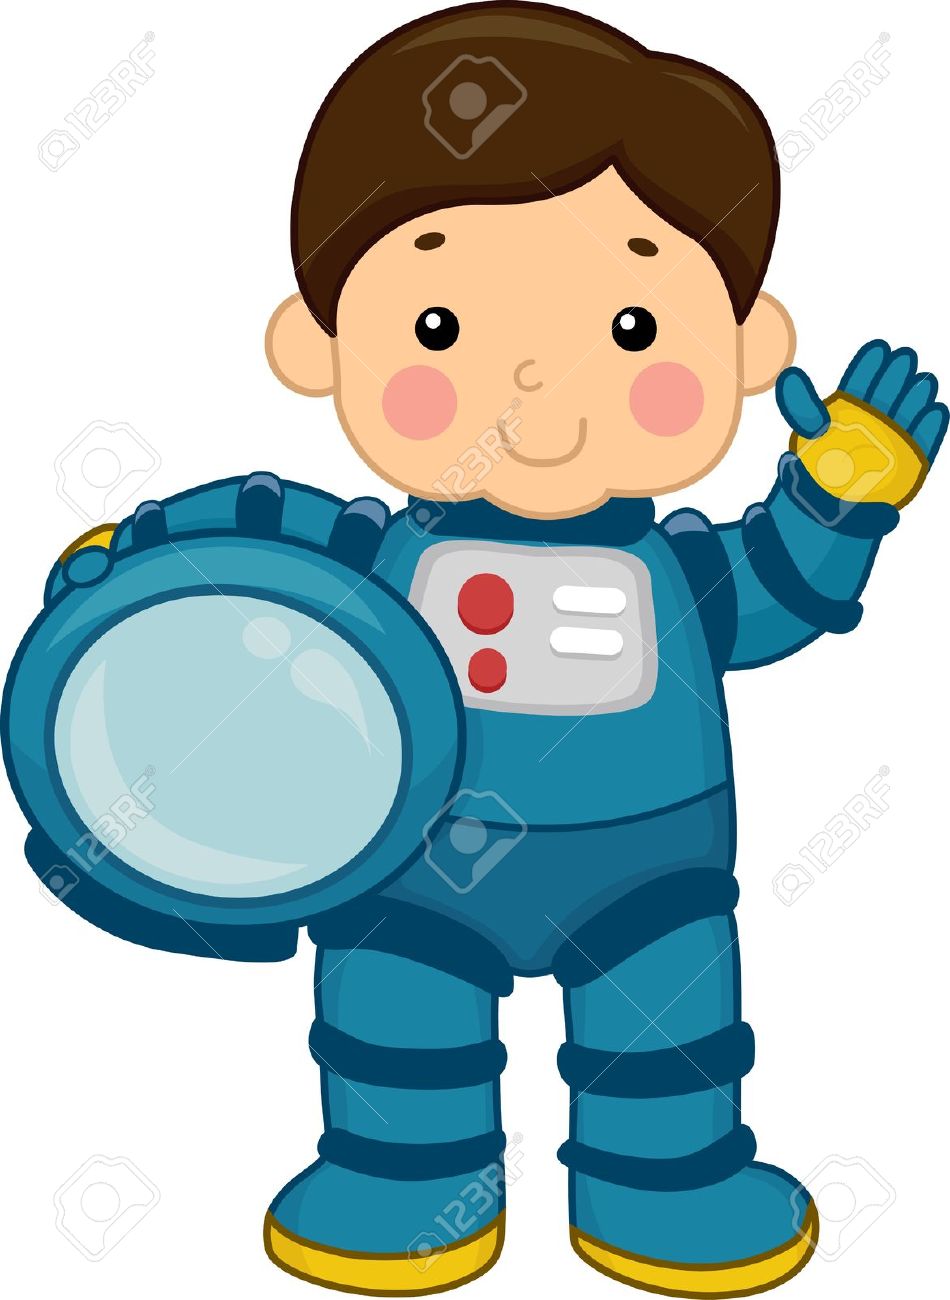 astronaut kid: Illustration of .